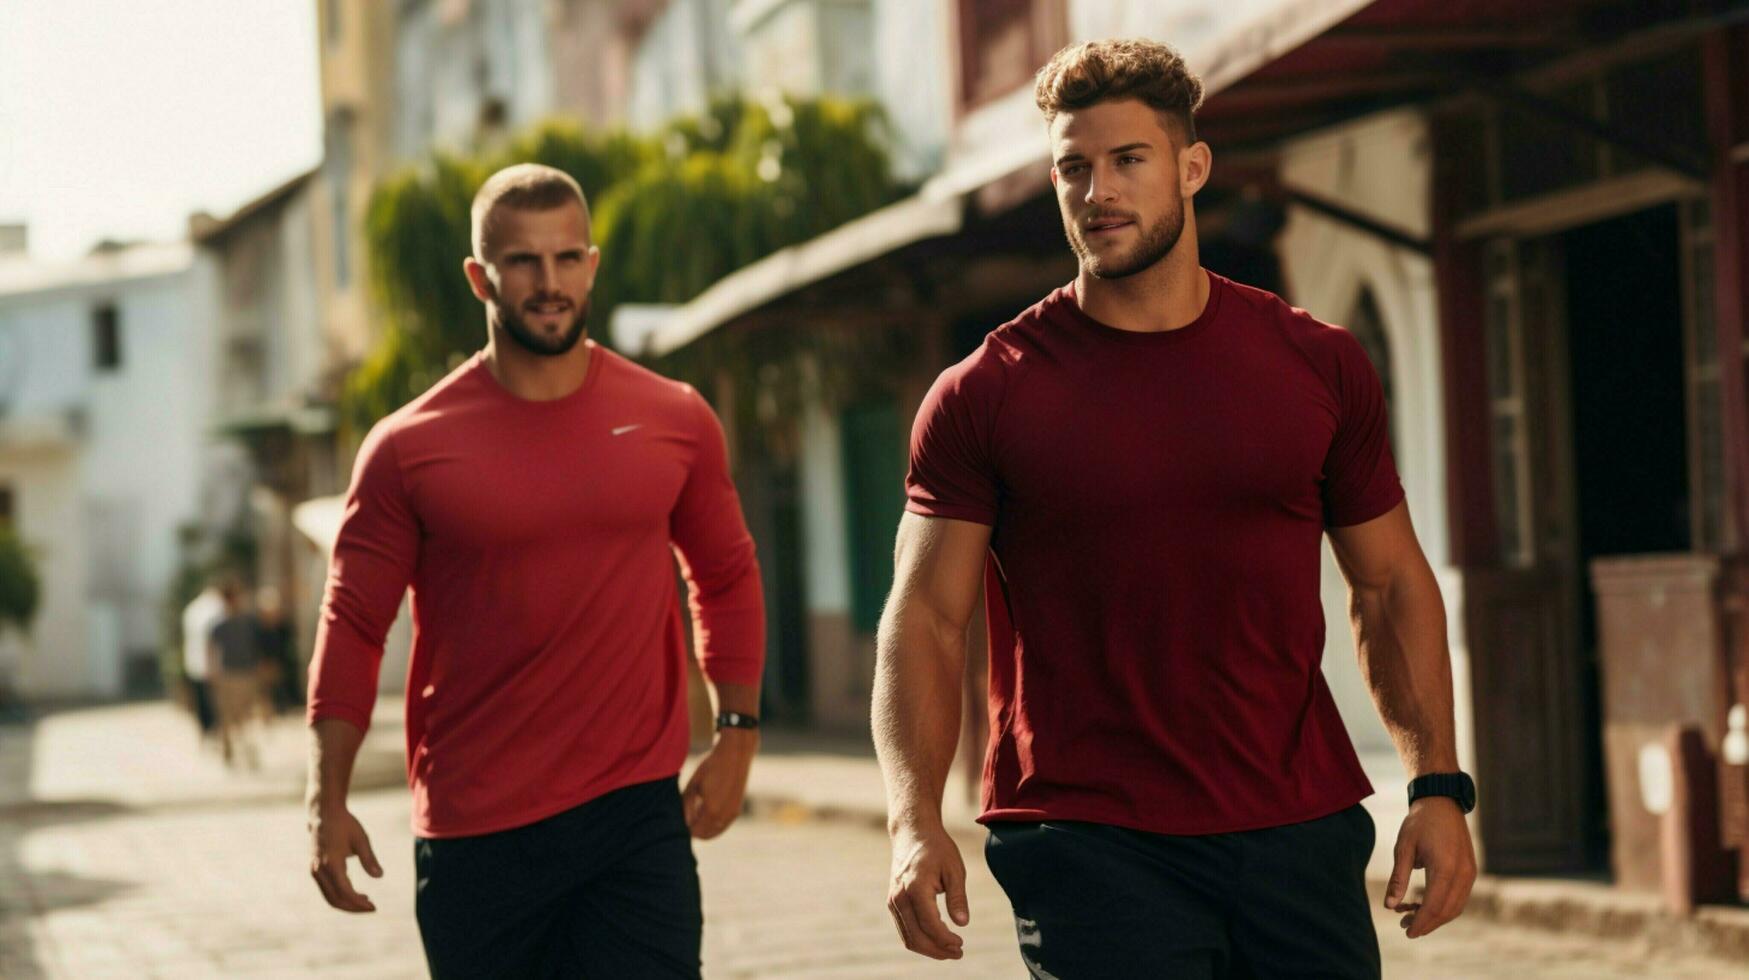 musclé Hommes le jogging en plein air dans des sports Vêtements photo